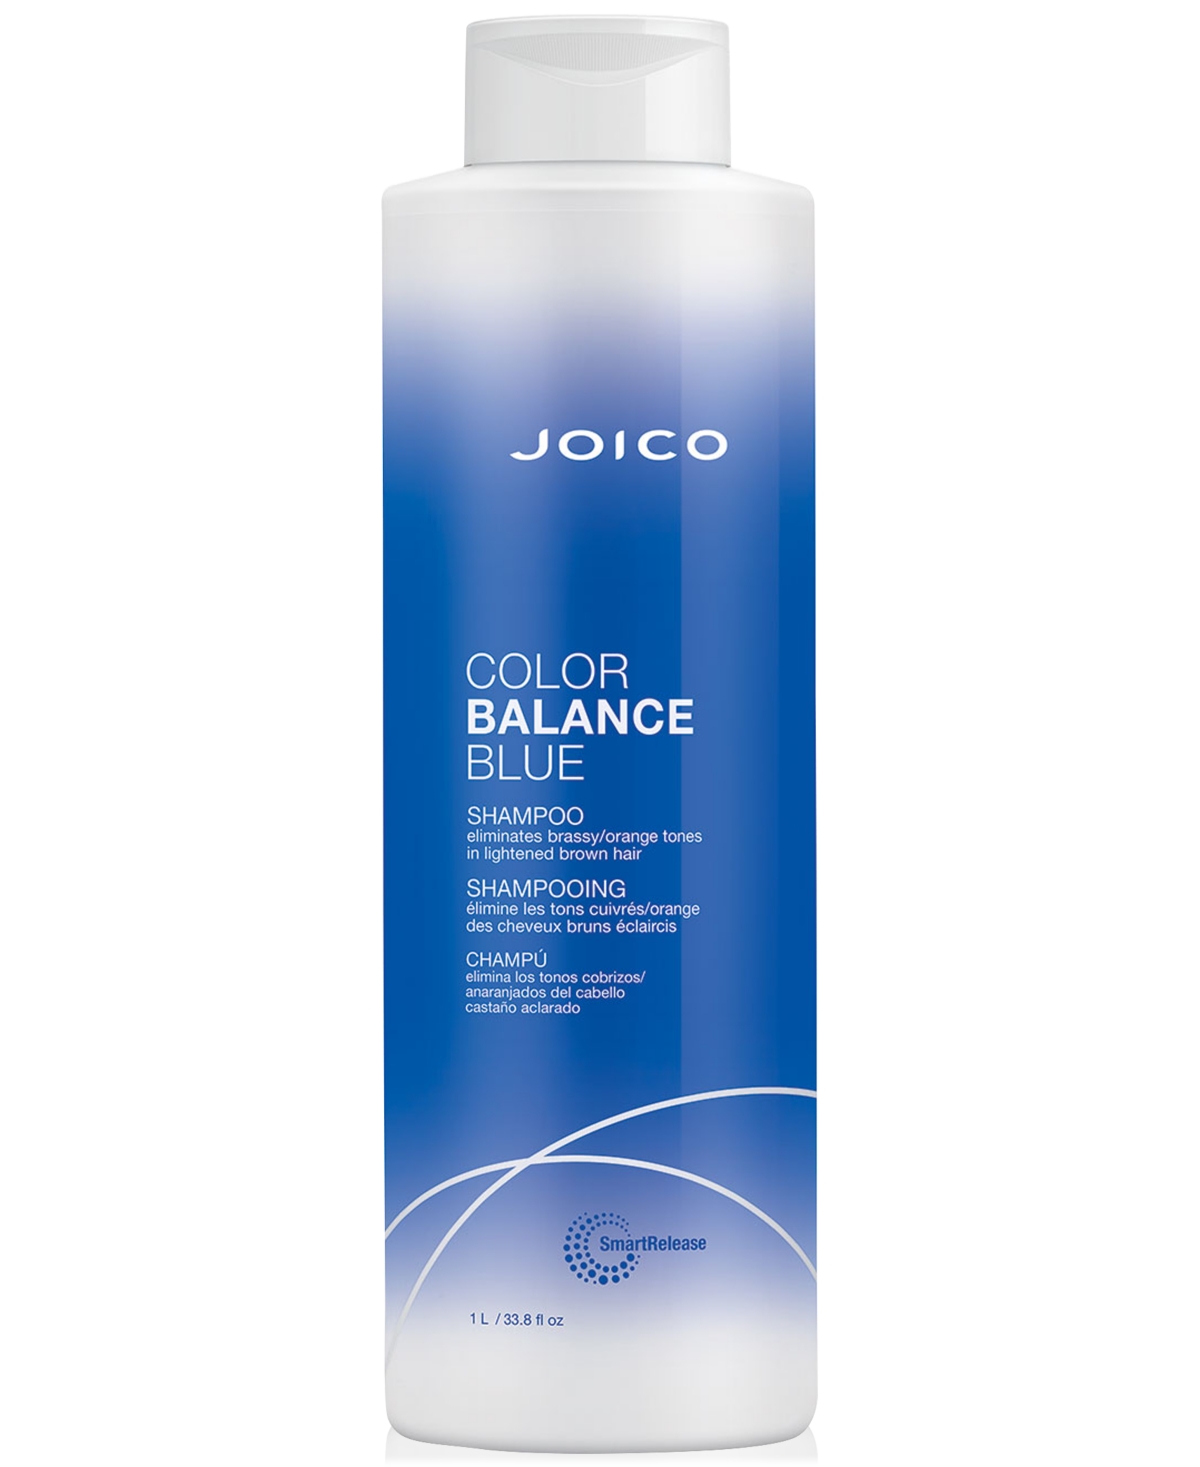 JOICO COLOR BALANCE BLUE SHAMPOO, 33.8 OZ, FROM PUREBEAUTY SALON & SPA